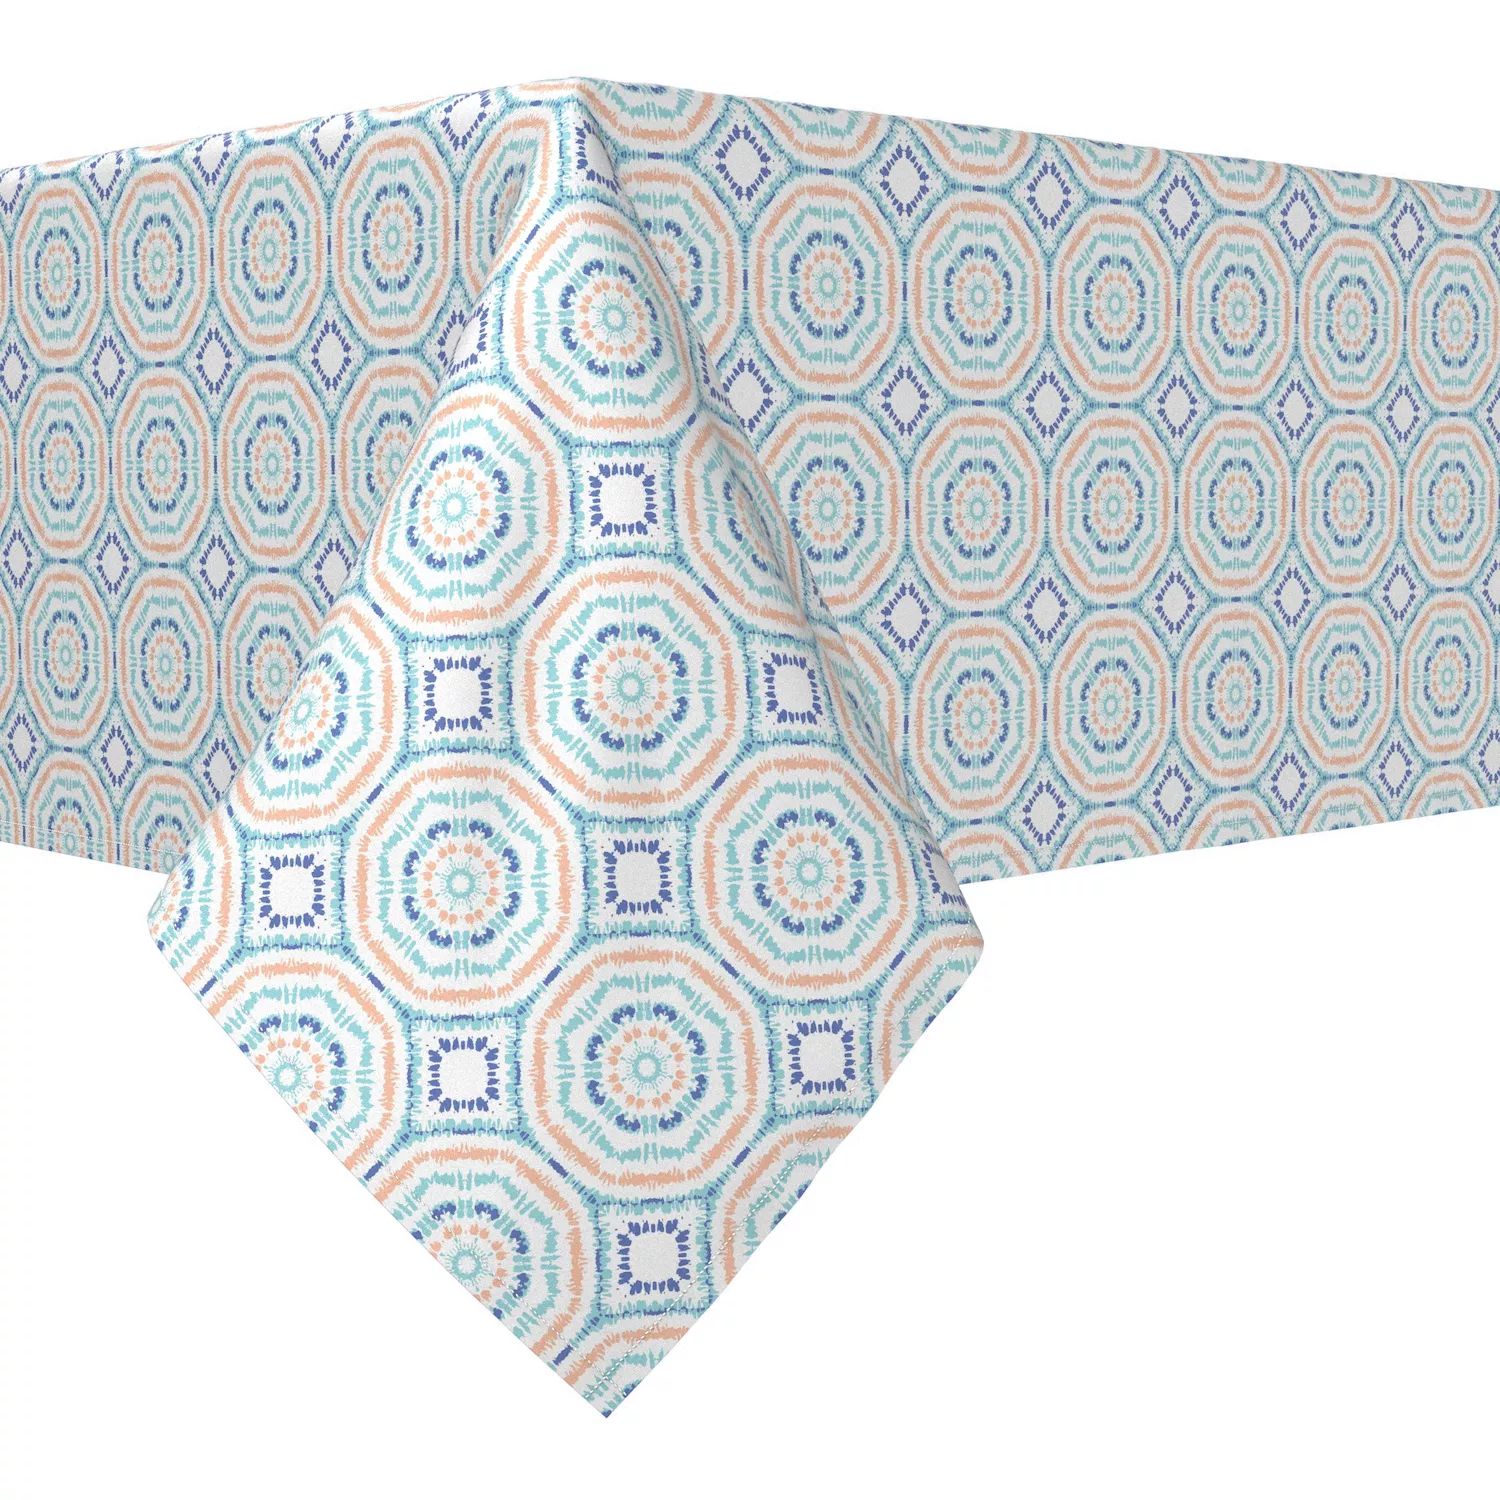 

Прямоугольная скатерть, 100 % хлопок, 60x120 дюймов, краситель Sunburst Tie Dye